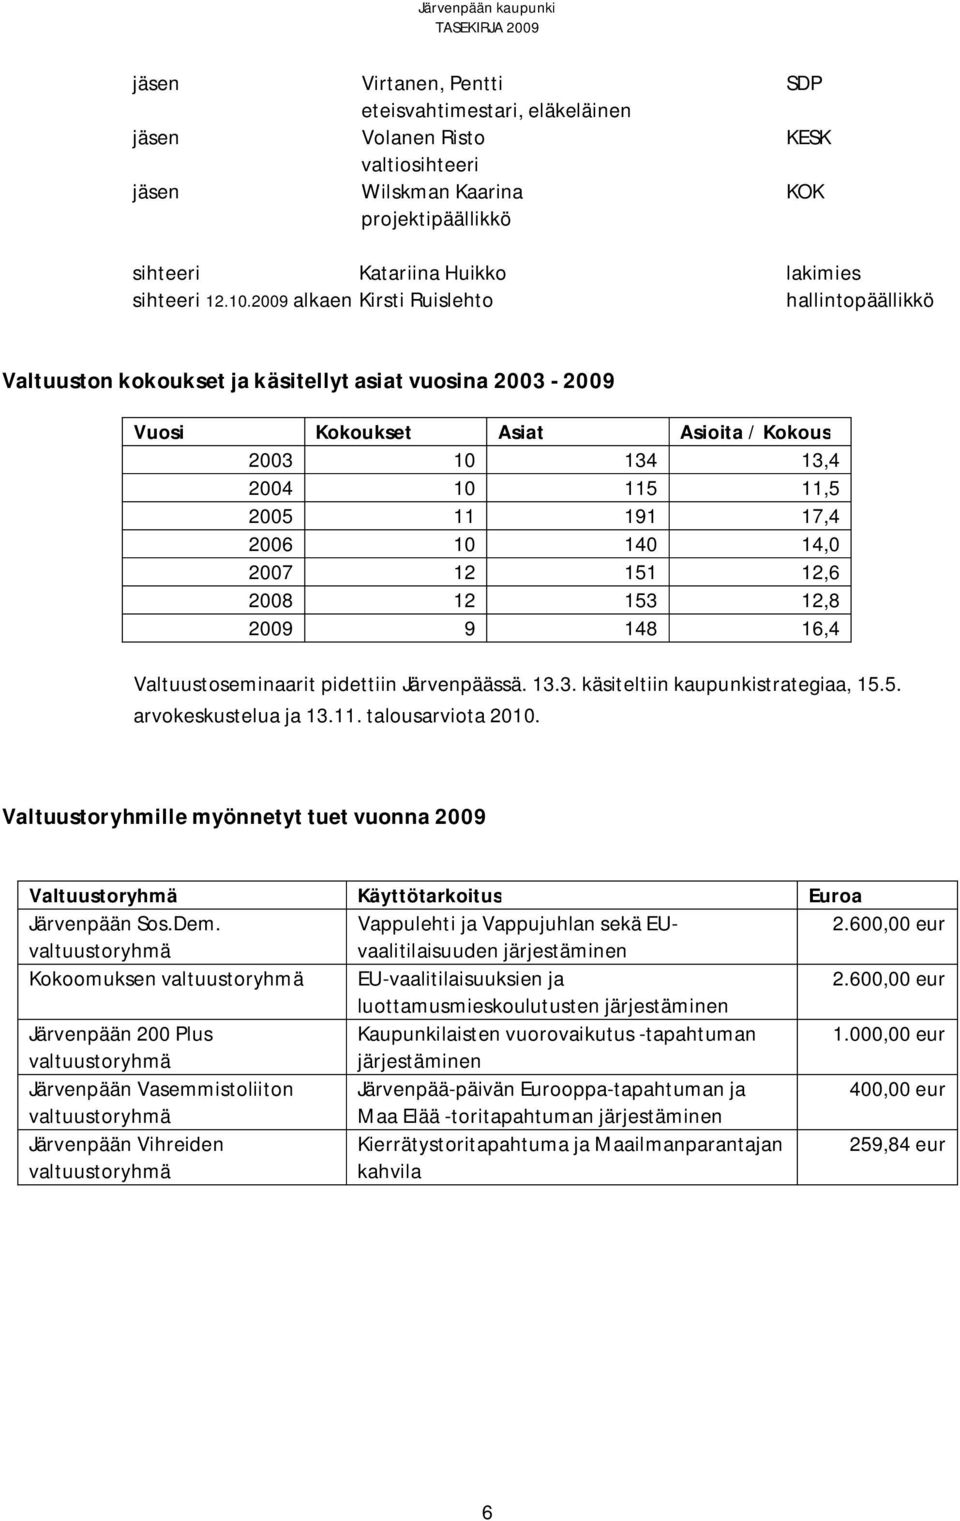 2006 10 140 14,0 2007 12 151 12,6 2008 12 153 12,8 2009 9 148 16,4 Valtuustoseminaarit pidettiin Järvenpäässä. 13.3. käsiteltiin kaupunkistrategiaa, 15.5. arvokeskustelua ja 13.11. talousarviota 2010.